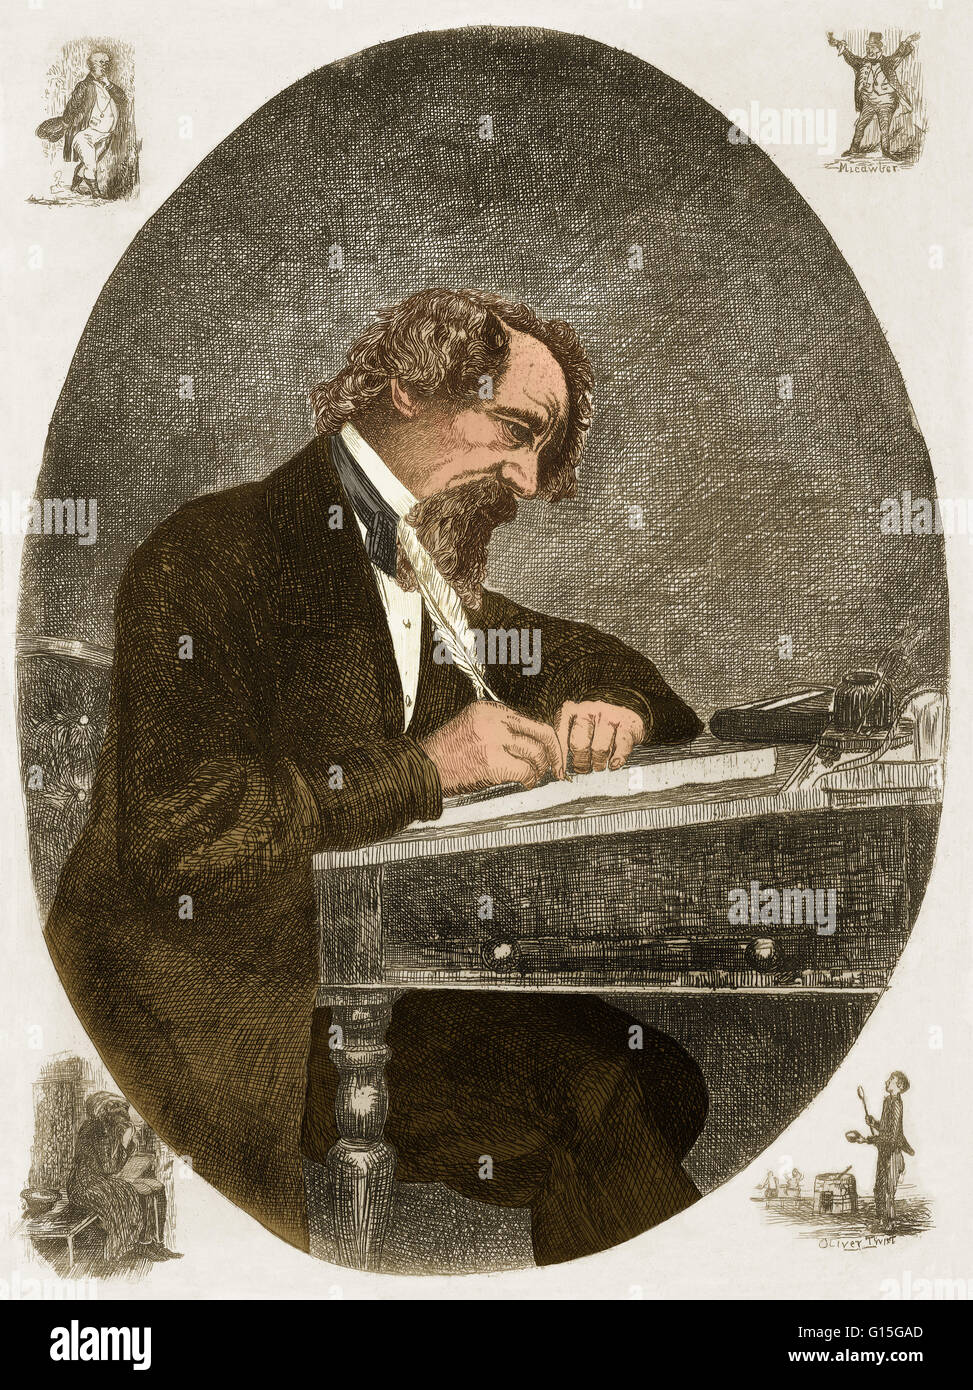 Charles John Huffam Dickens (Febbraio 7, 1812 - Giugno 9, 1870) è stato uno scrittore inglese e critico sociale. Egli ha creato alcune delle più memorabili personaggi di fantasia ed è generalmente considerato come il più grande romanziere del periodo Vittoriano. Durante hi Foto Stock